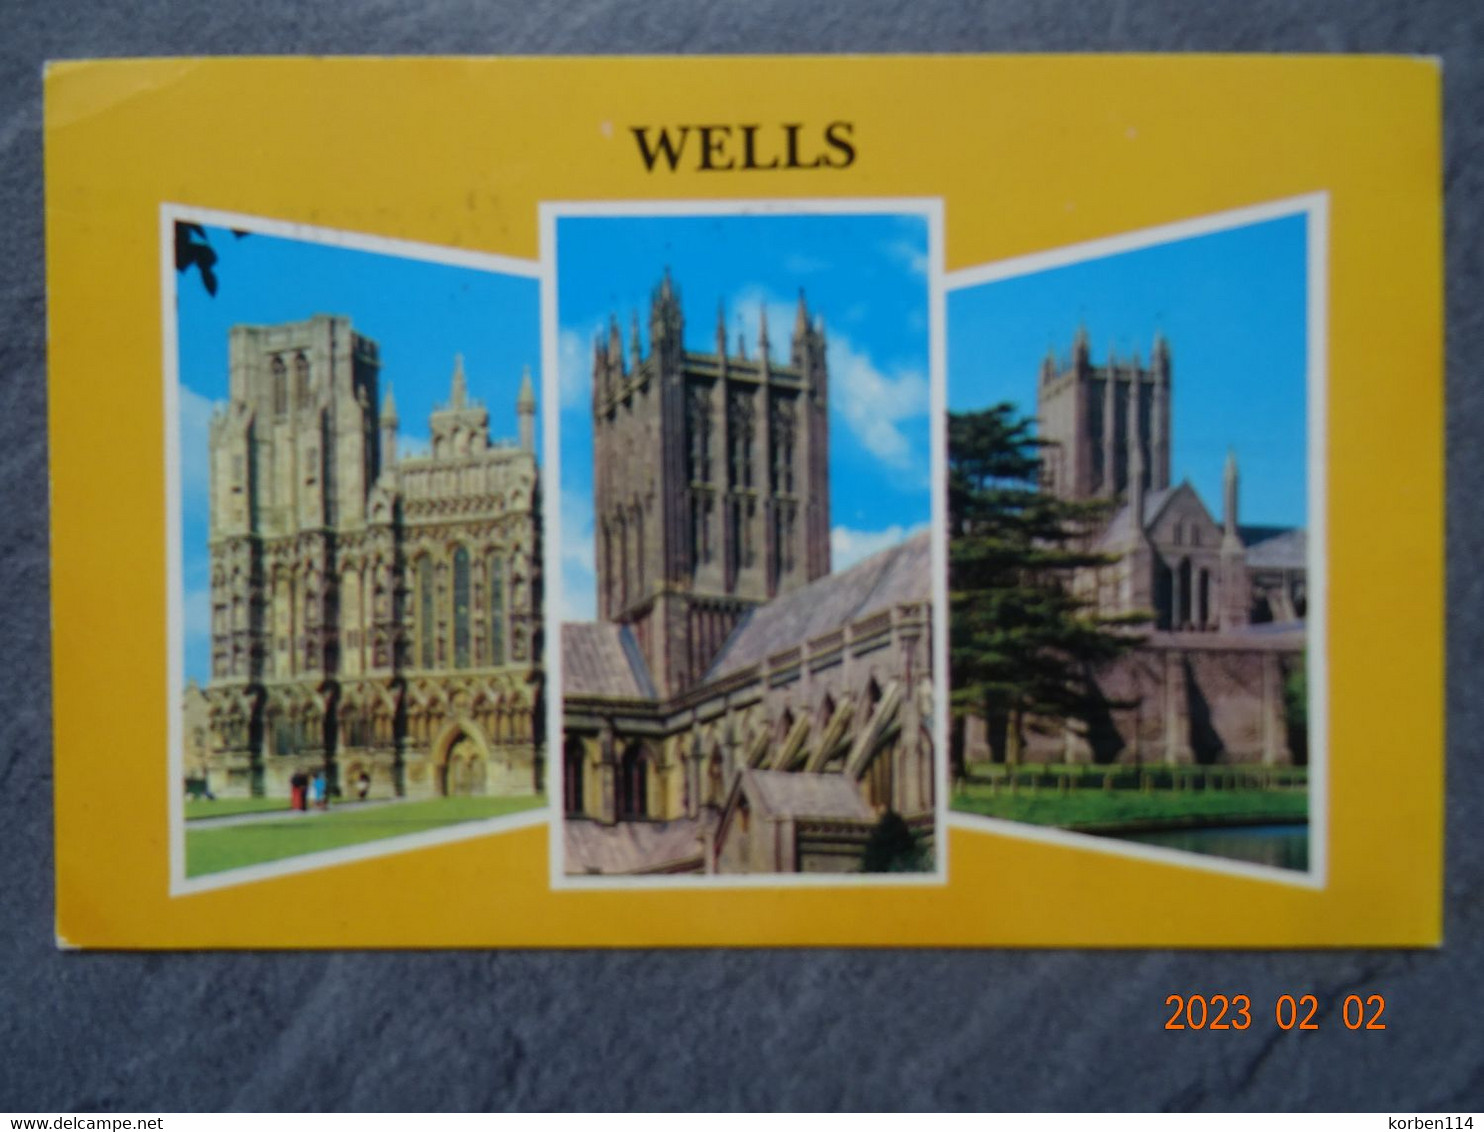 WELLS - Wells